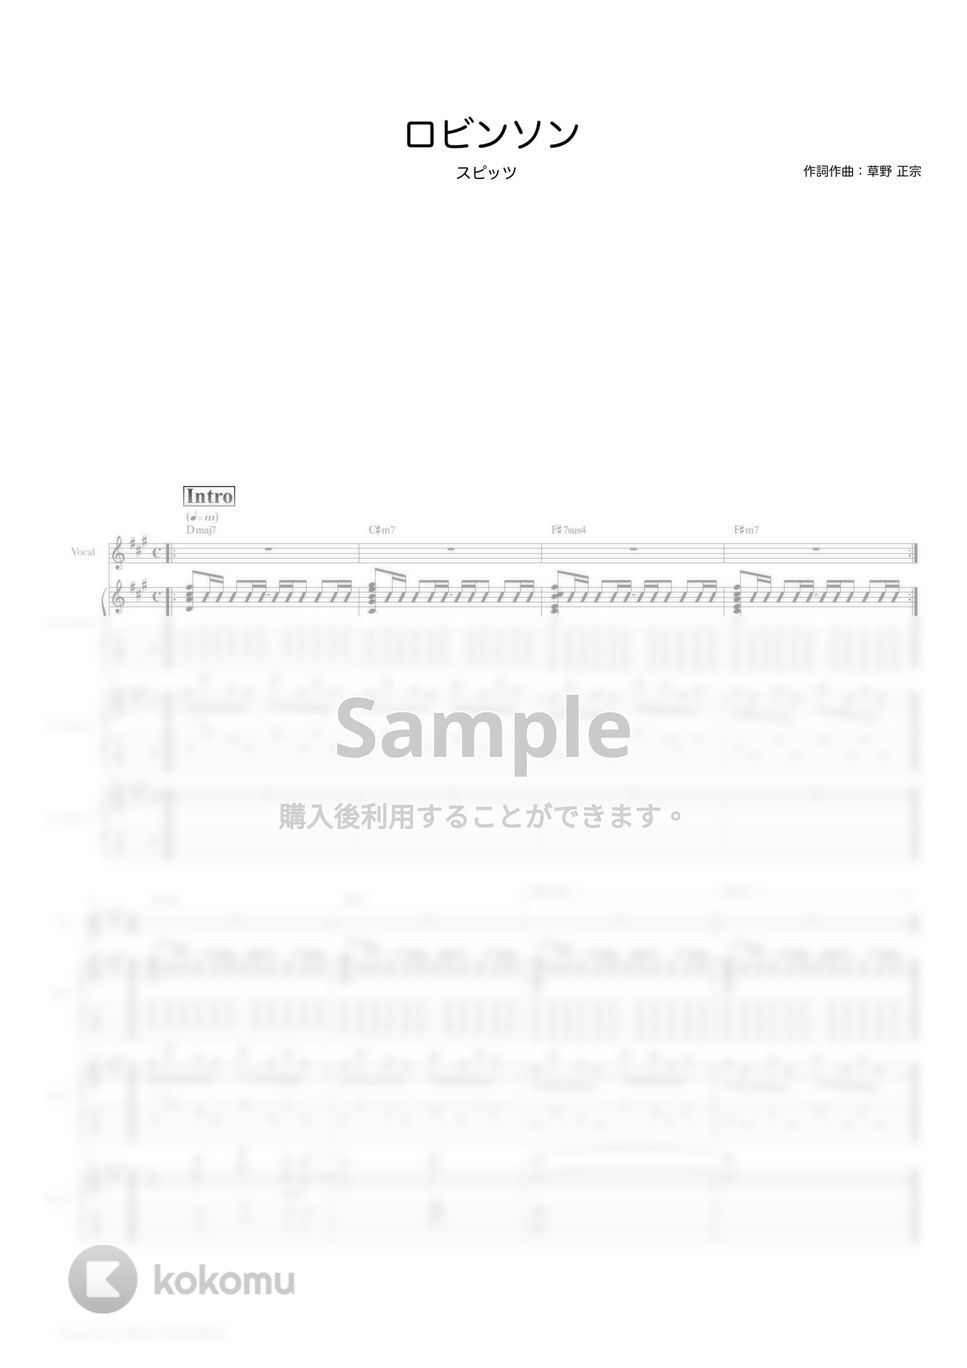 スピッツ - ロビンソン (ギタースコア・歌詞・コード付き) by TRIAD GUITAR SCHOOL